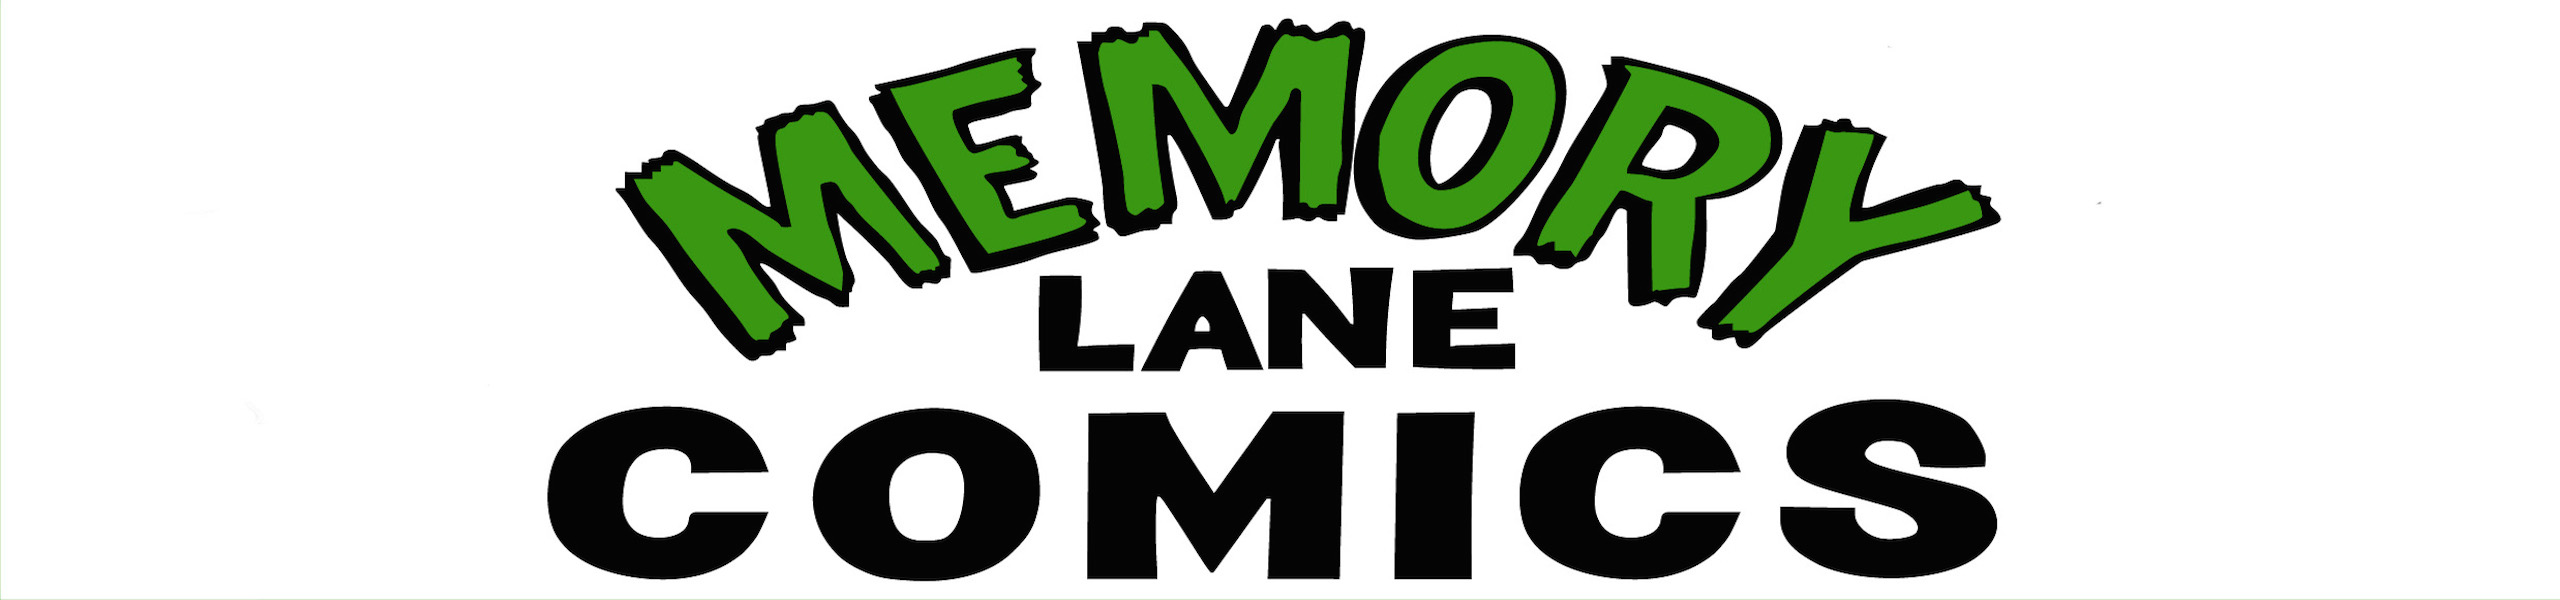 MEMORY LANE COMICS